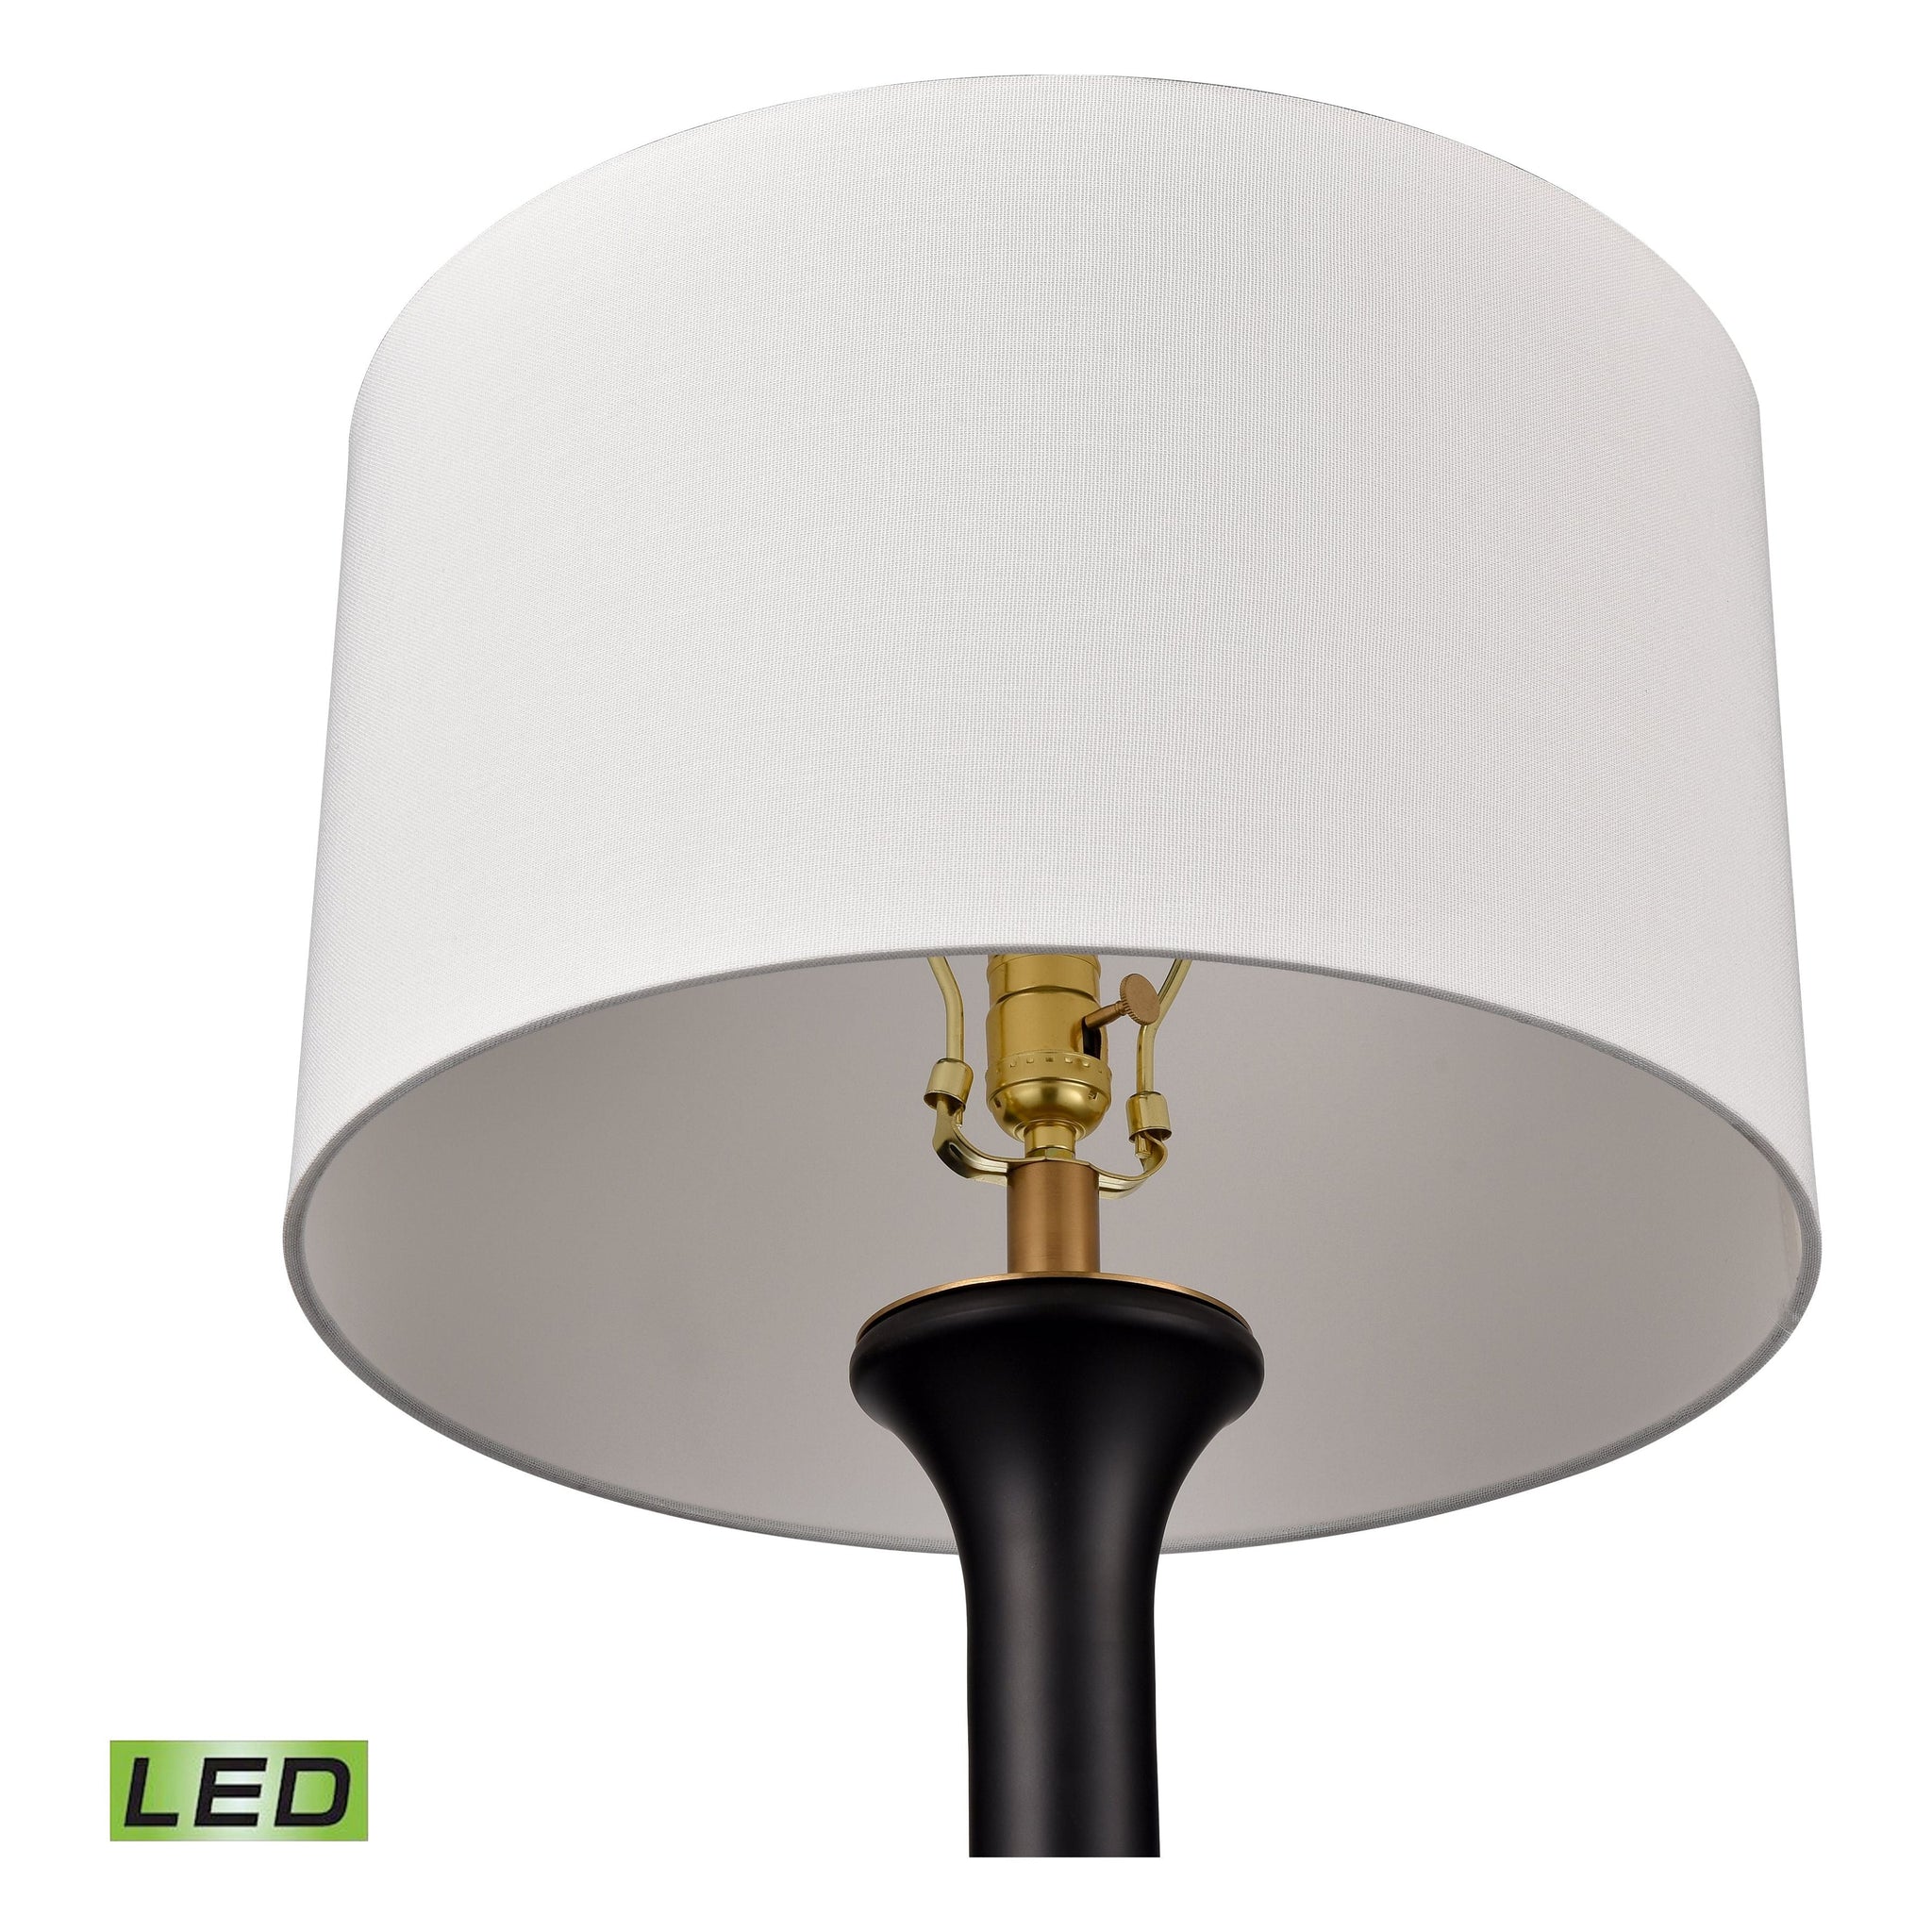 Bradley 30.5" High 1-Light Table Lamp